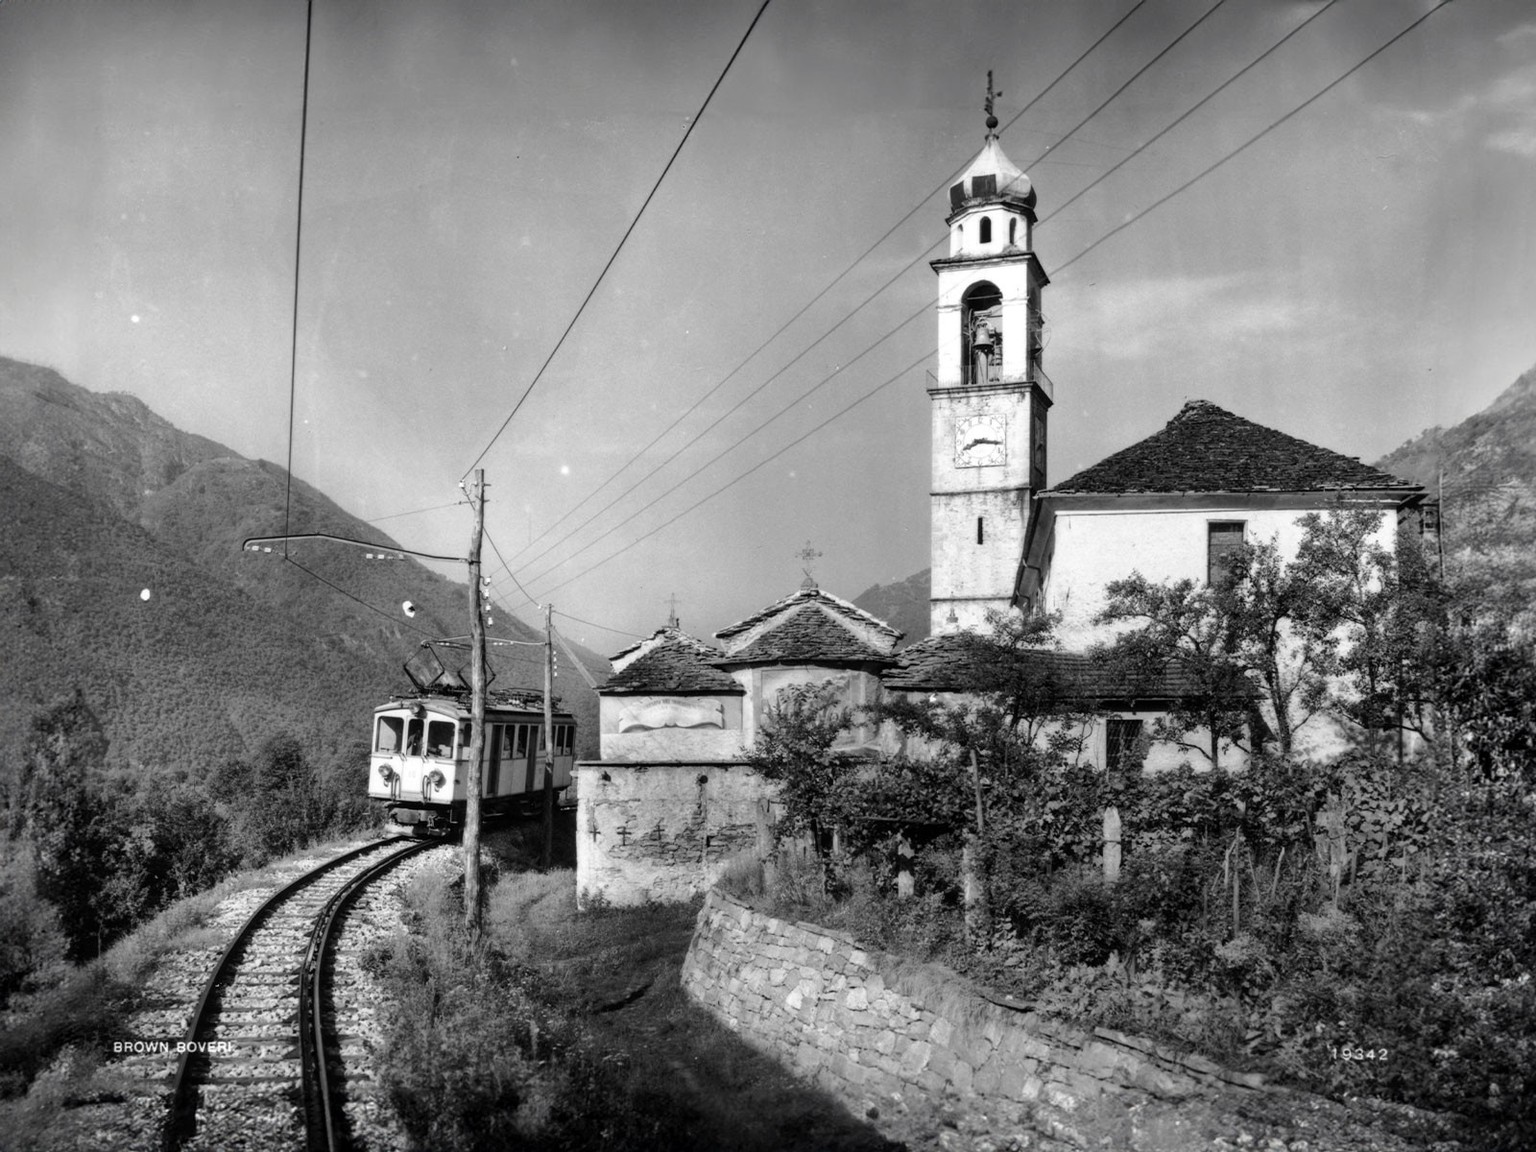 Motrice électrique BCFe 4/4, n° 18, passant devant l’église de Tegna, photographiée le 24 août 1925.
https://www.verkehrshaus.ch/fr/magazine/lelectrification-du-rail.html